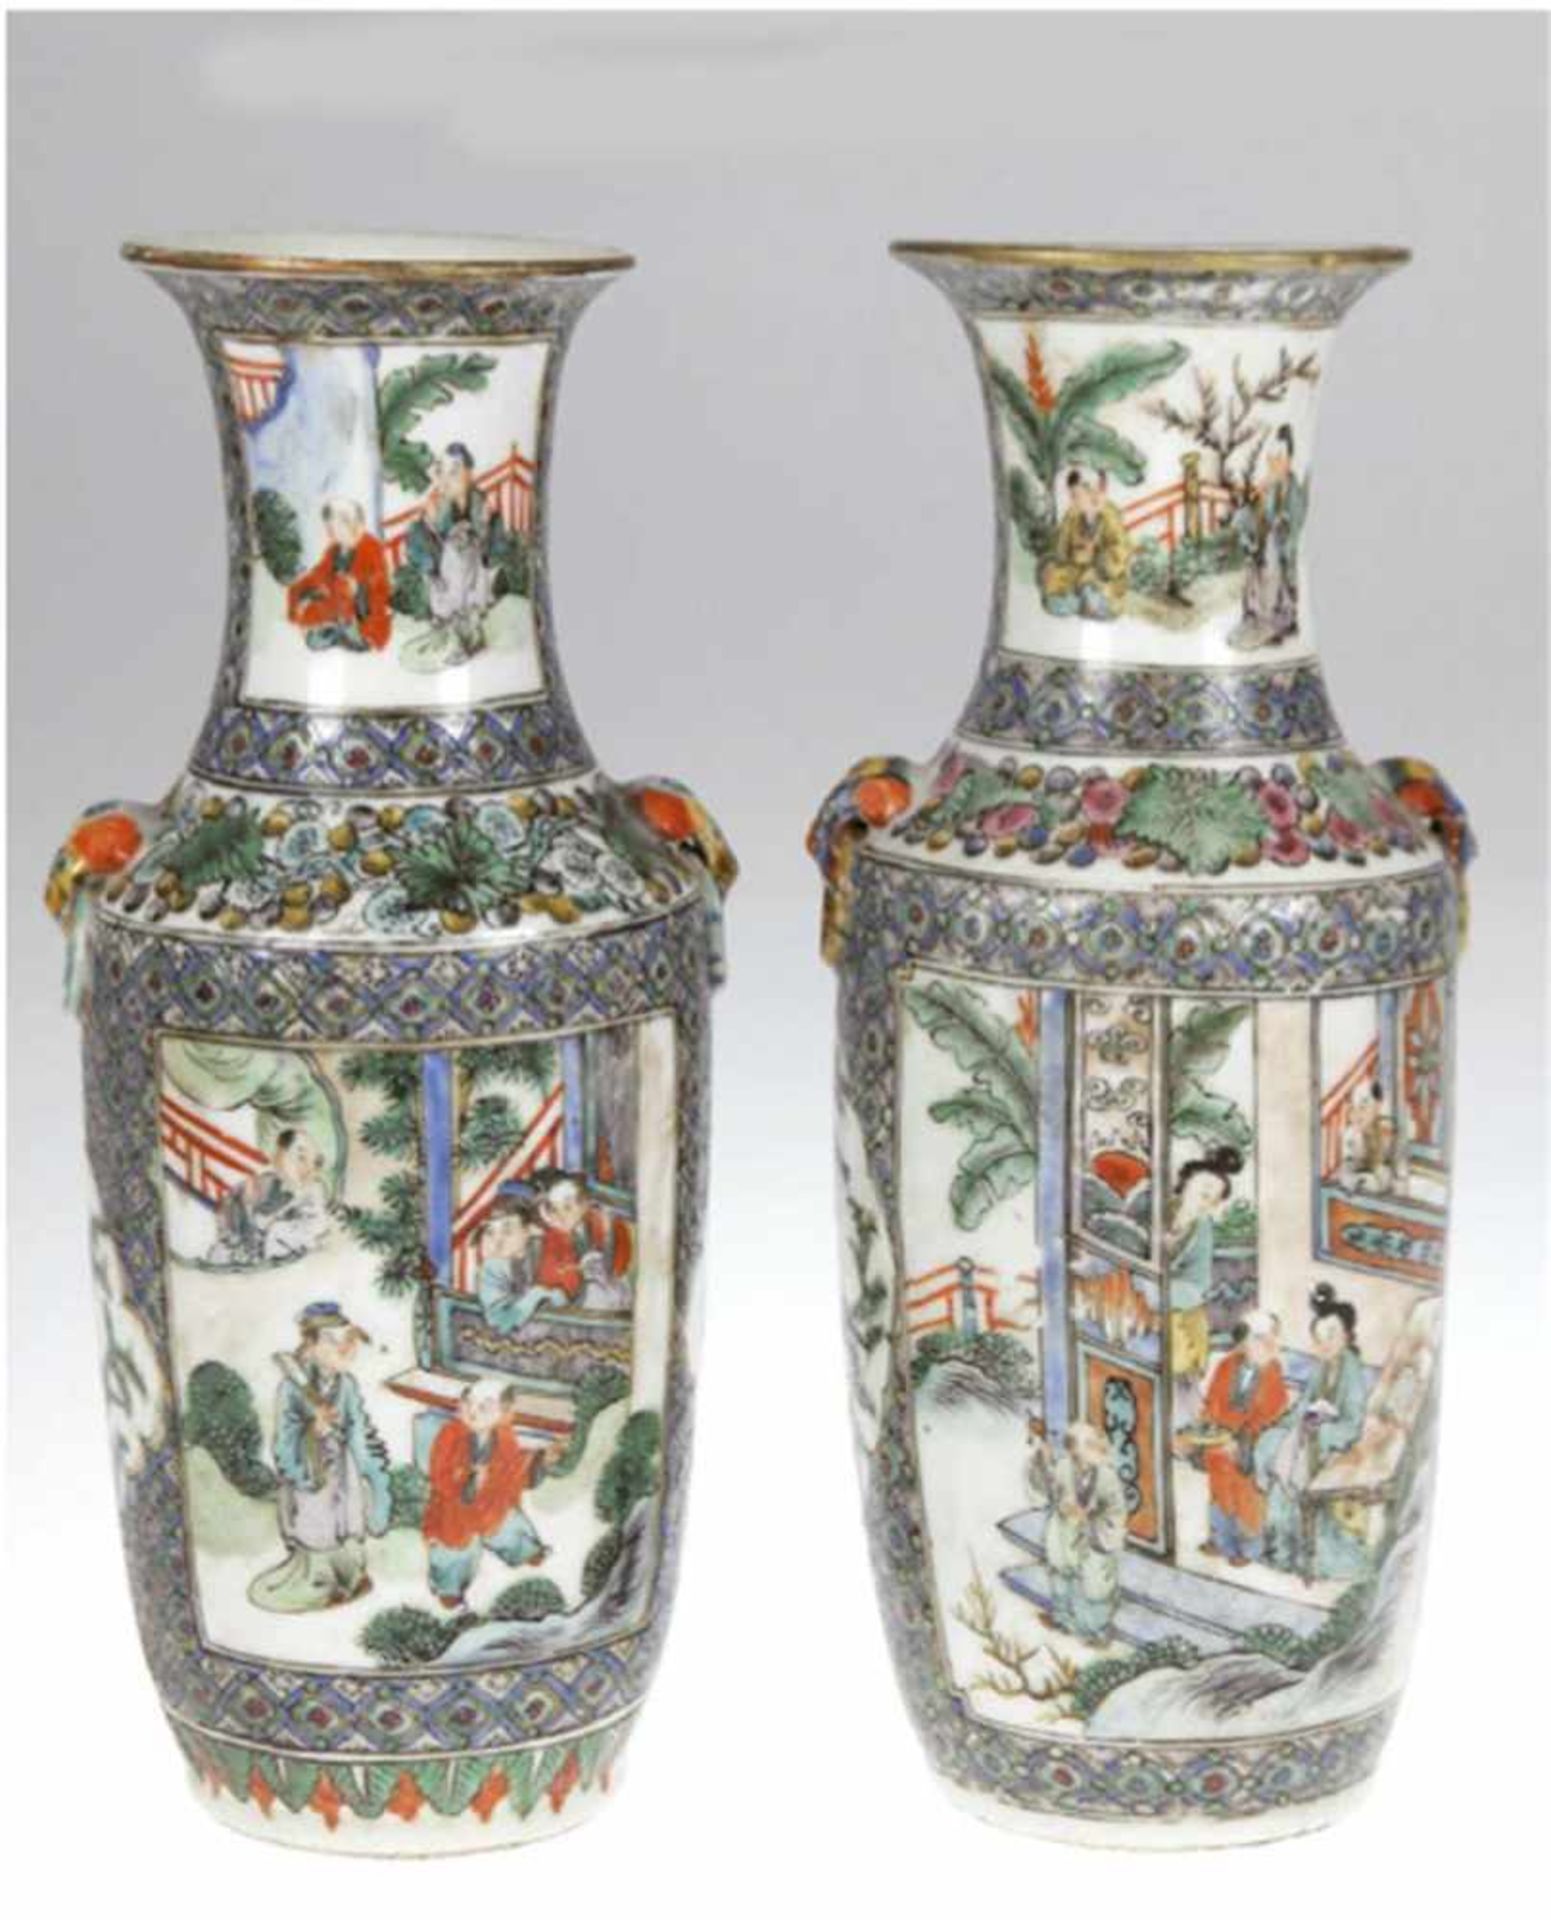 Paar Vasen, China um 1900, polychrome Floral- und Landschaftsmalerei mit Personen,bestoßen,